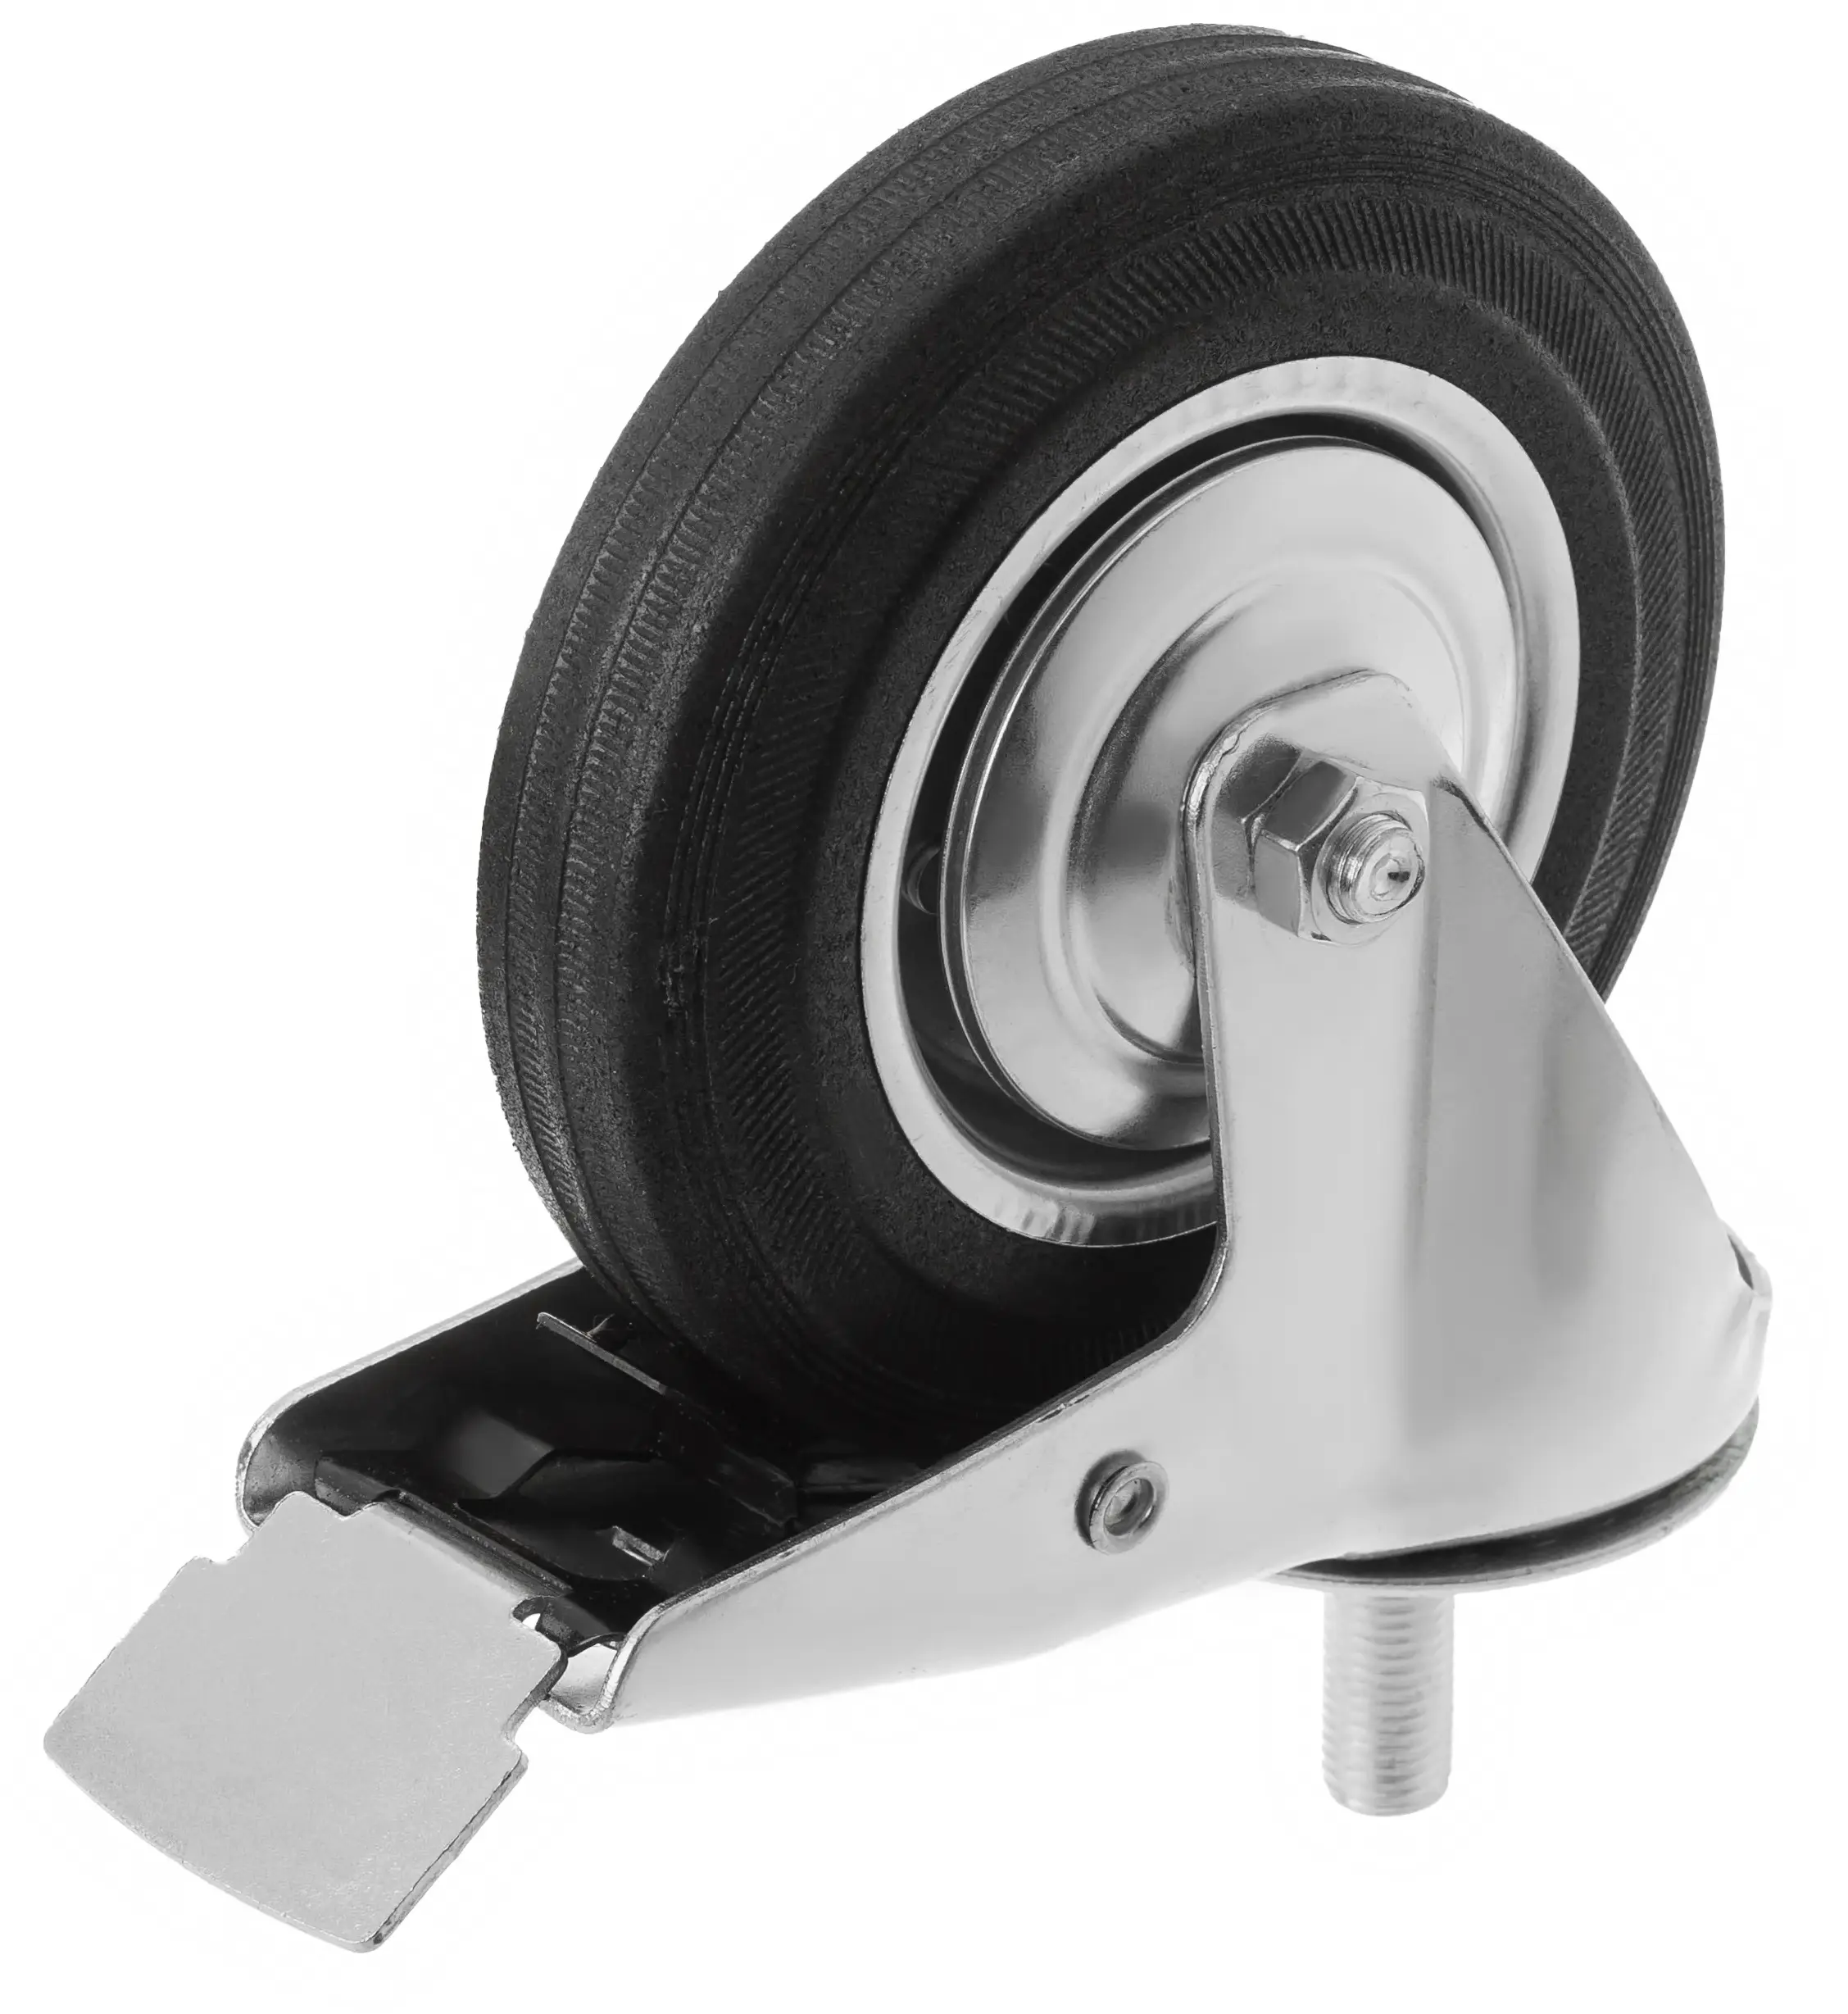 Промышленное колесо, диаметр 160мм, болтовое крепление, поворотная опора, тормоз, черная резина, роликовый подшипник - SCtb 63